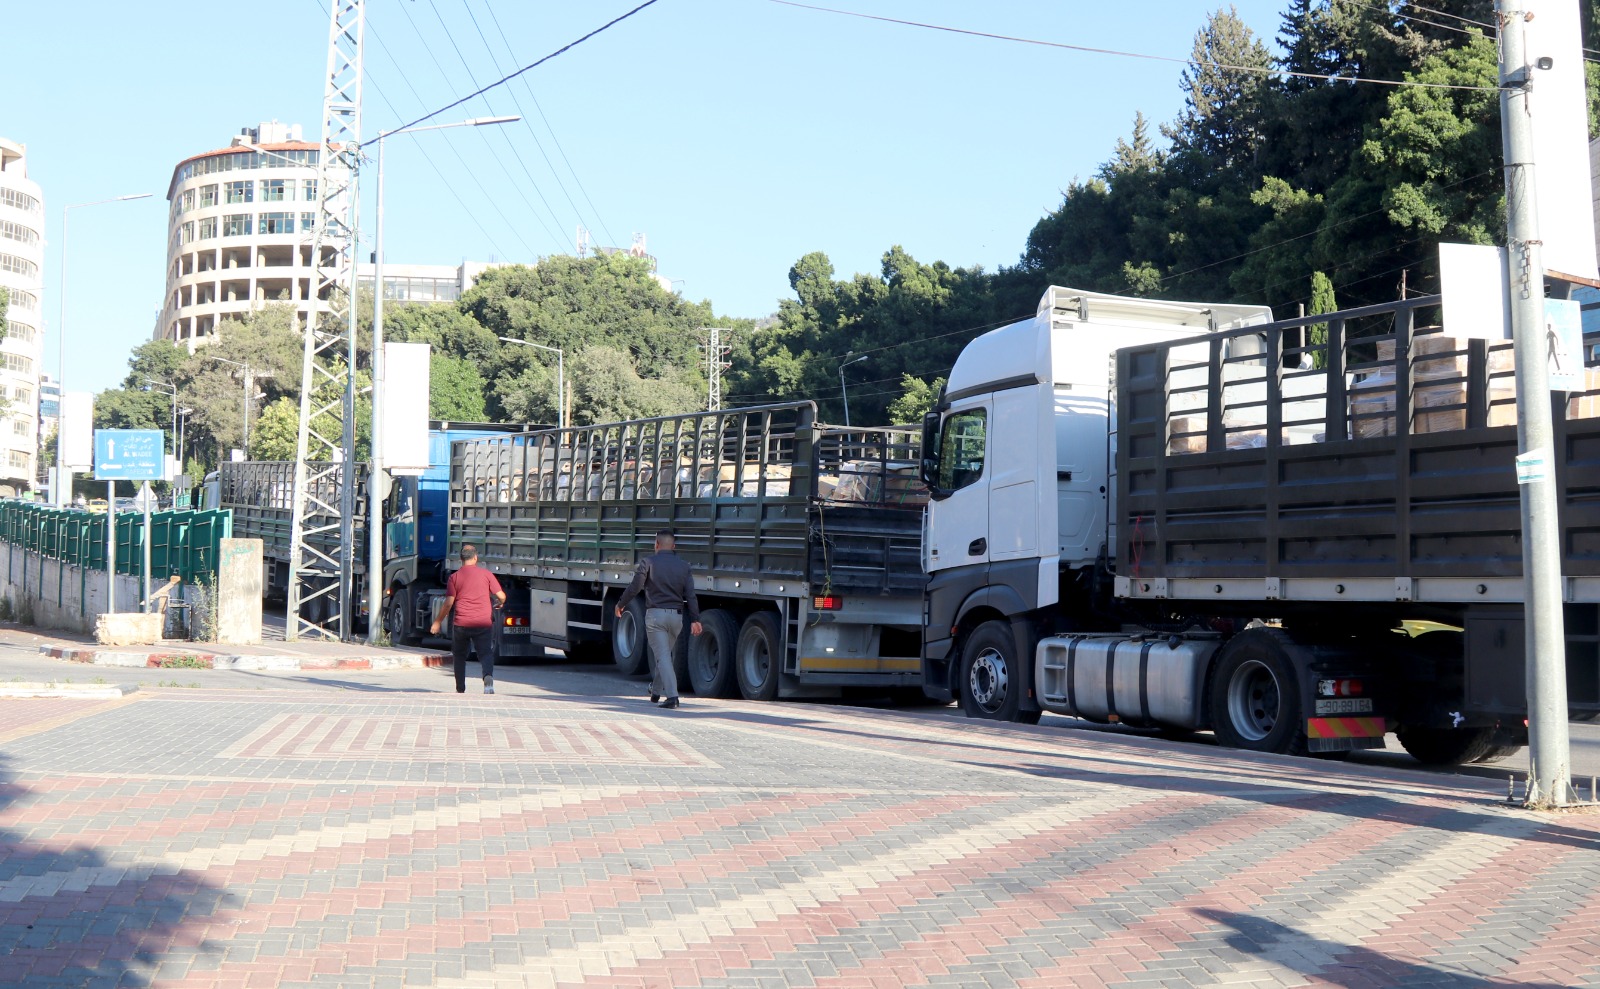 وصول طواقم الميداني الأردني في نابلس ترافقها 8 شاحنات مساعدات